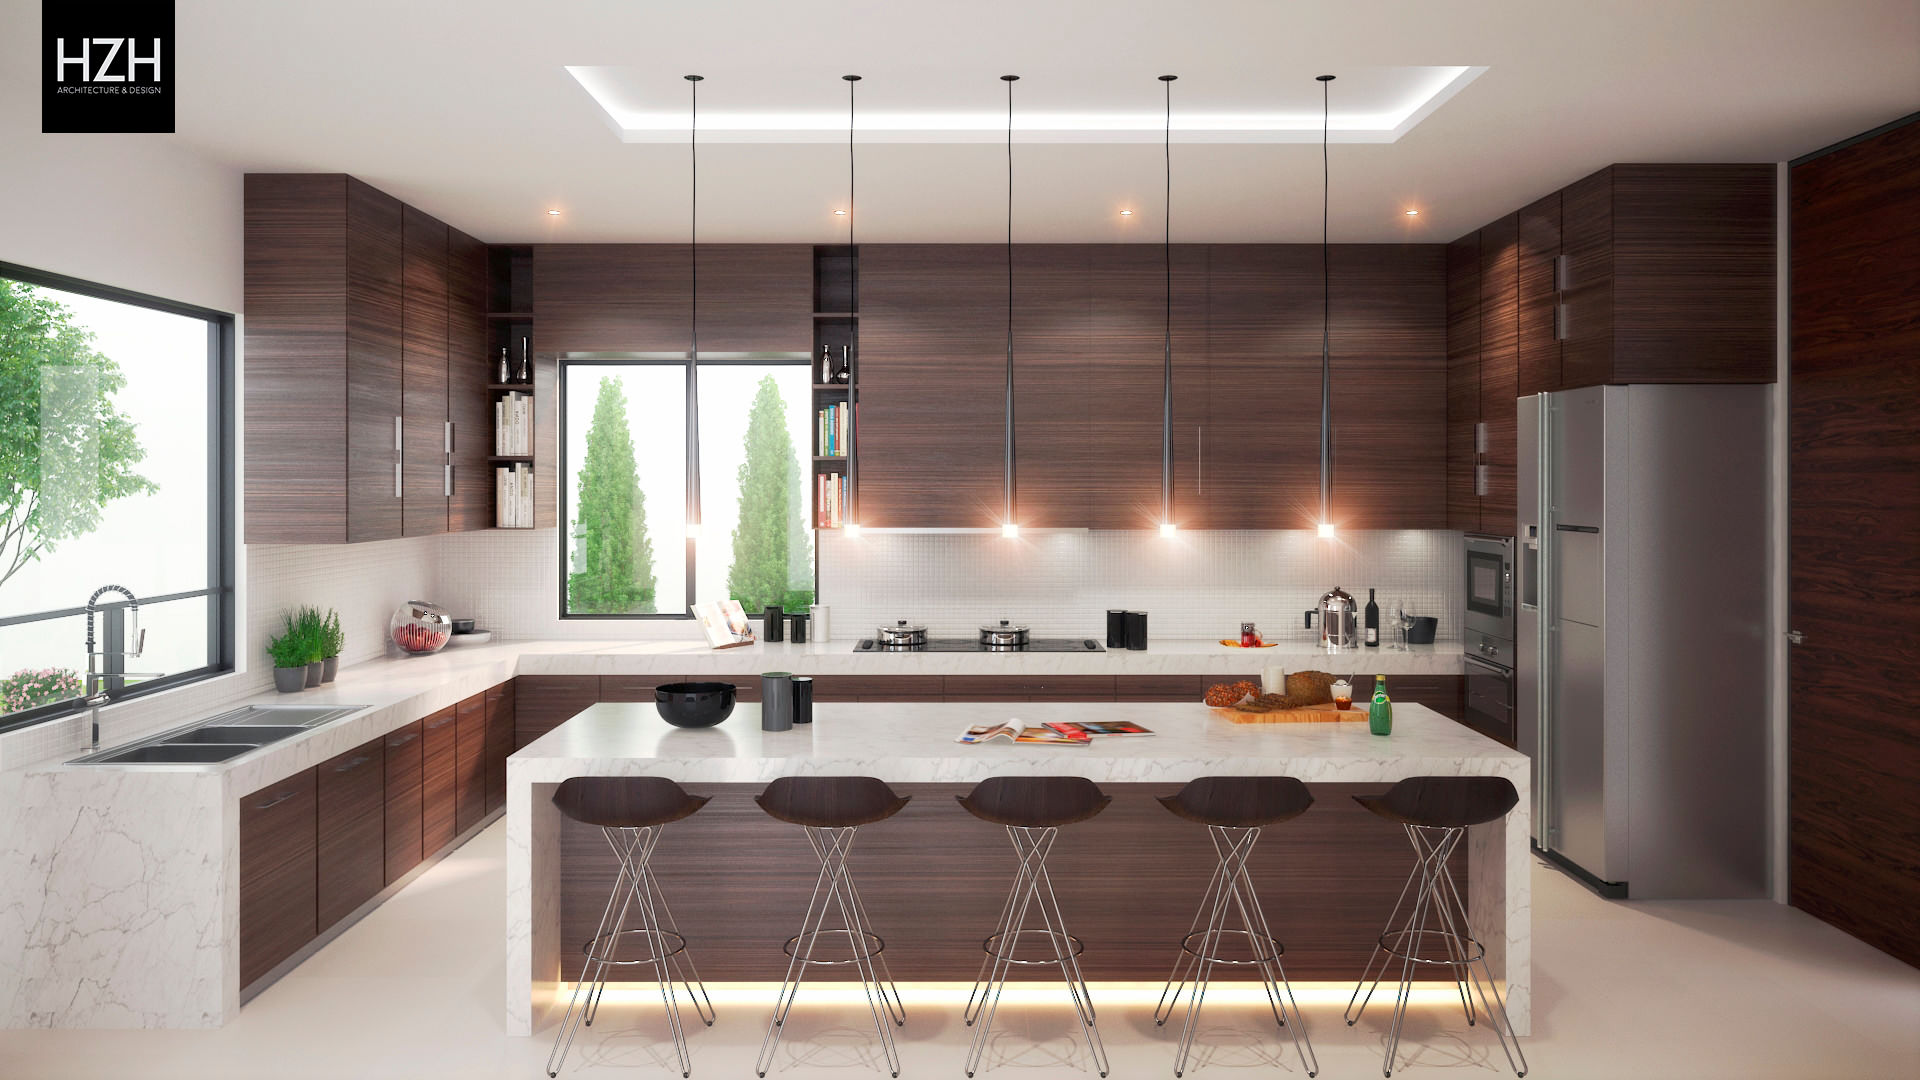 Diseño de cocina e interiores. HZH Arquitectura & Diseño Cocinas de estilo moderno